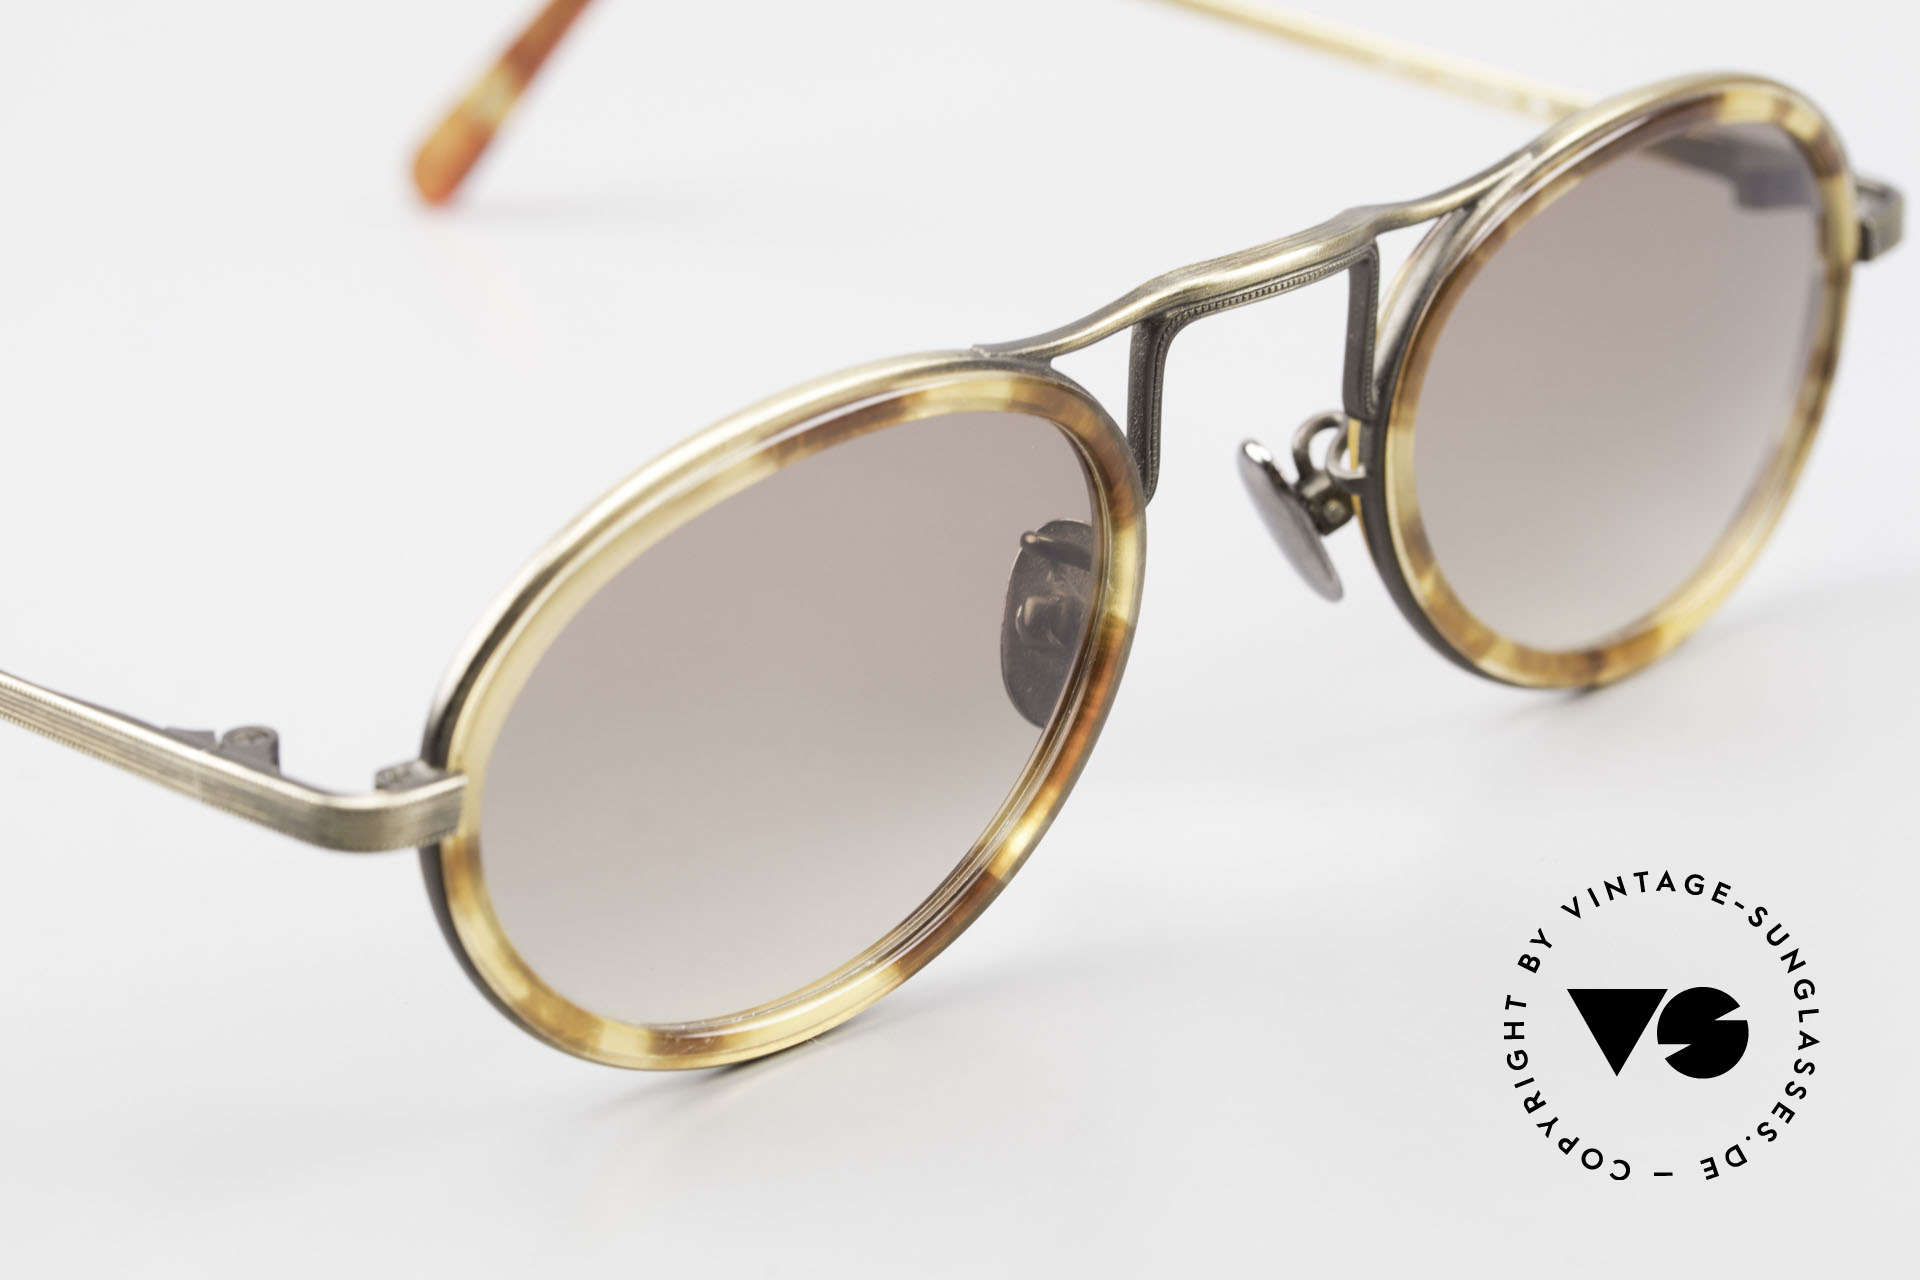 Sunglasses Oliver Peoples MP1 Vintage Designer Frame Oval